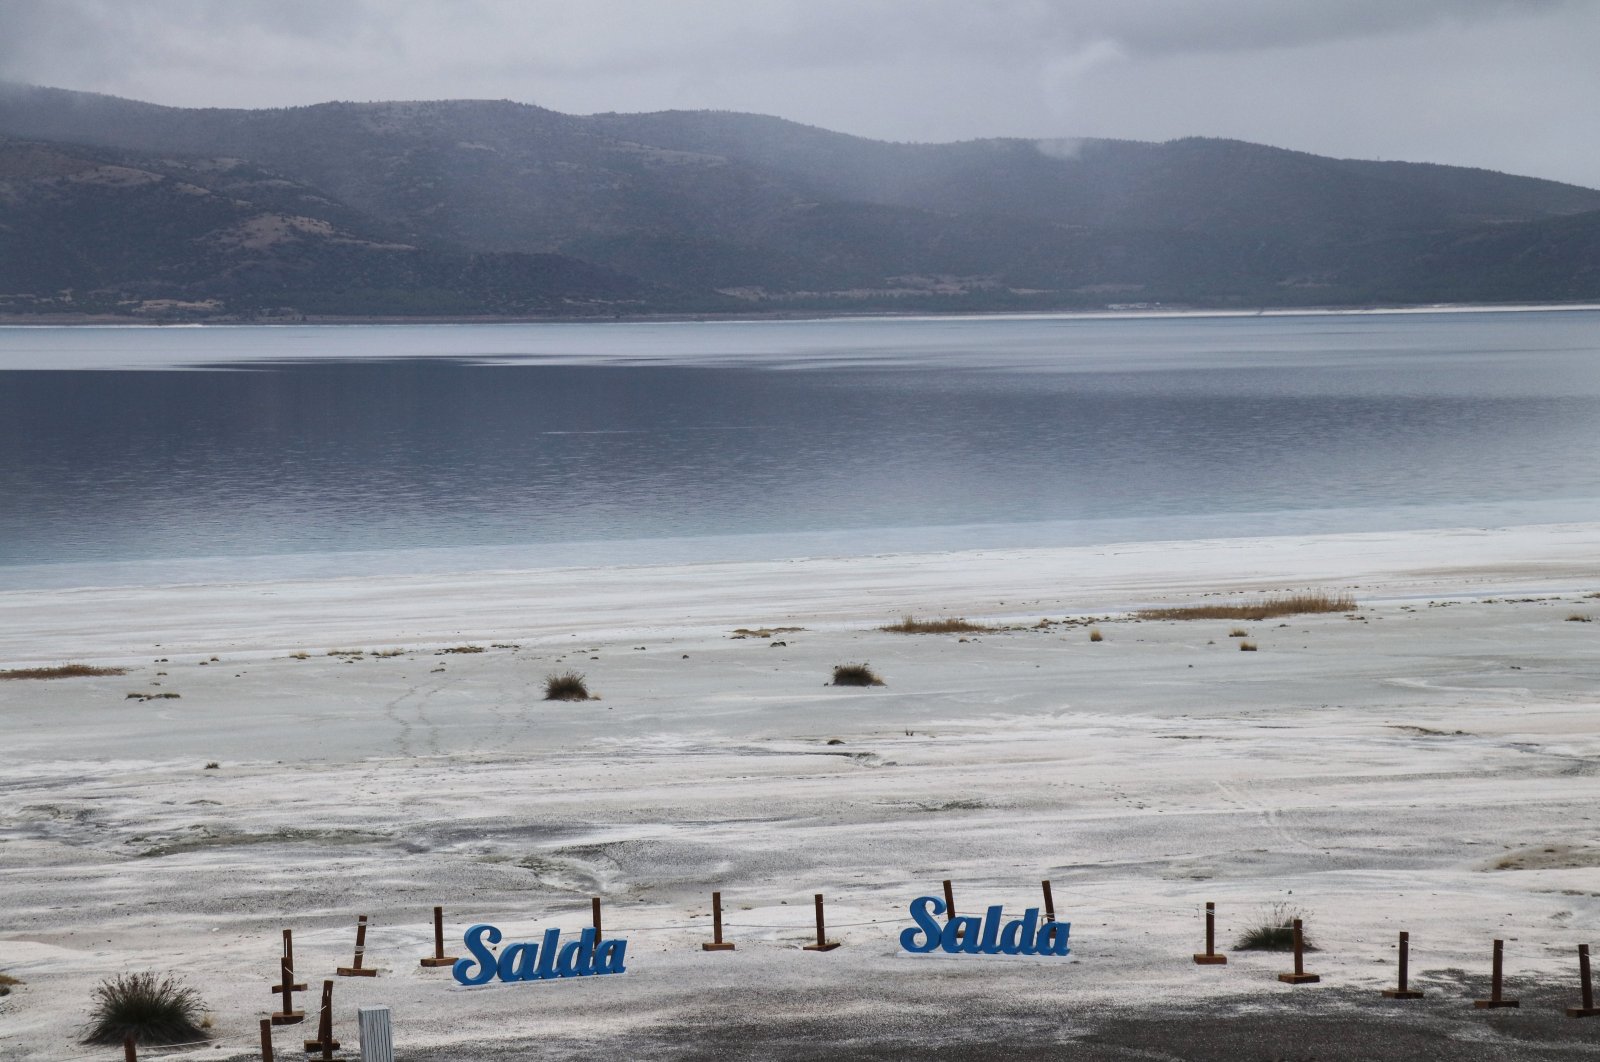 2nd phase of 'Mars research' in Türkiye's Lake Salda begins | Daily Sabah - Daily Sabah